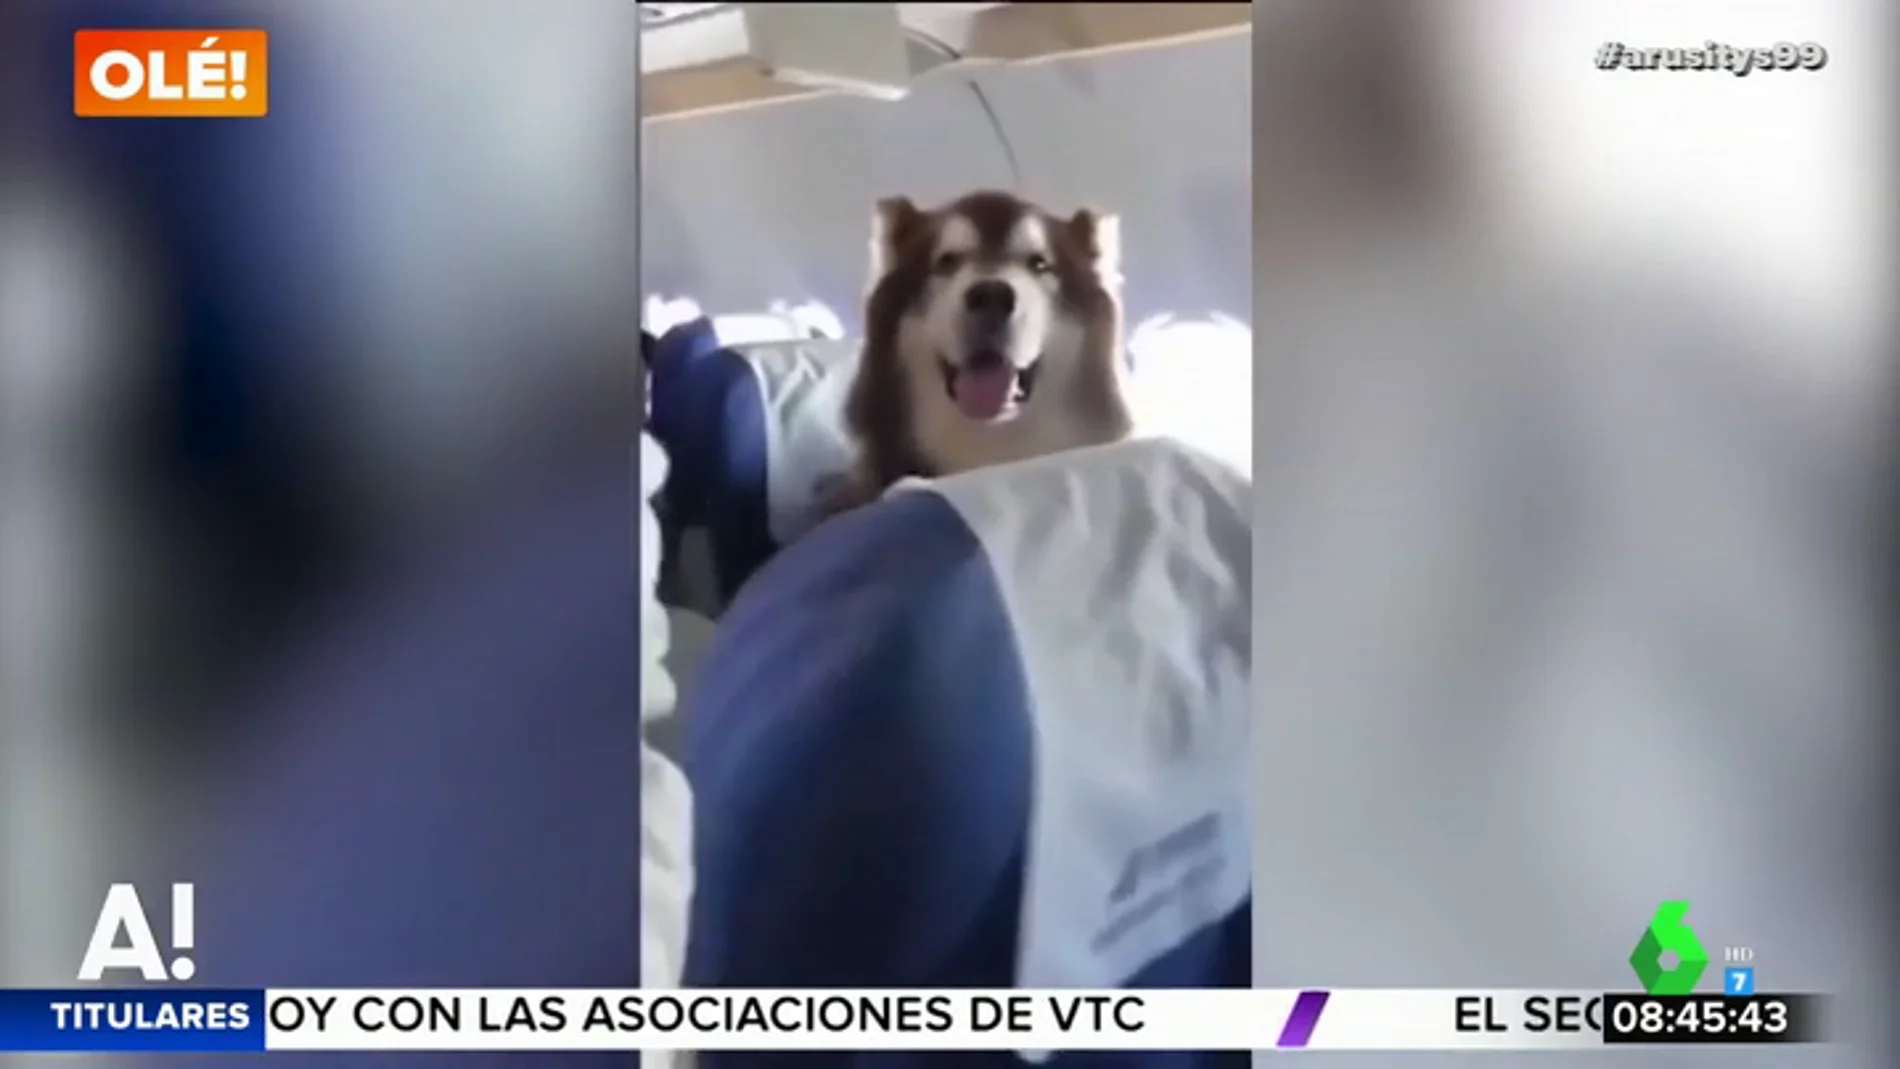 Un perro viaja en avión junto a su dueña con discapacidad para darle apoyo emocional